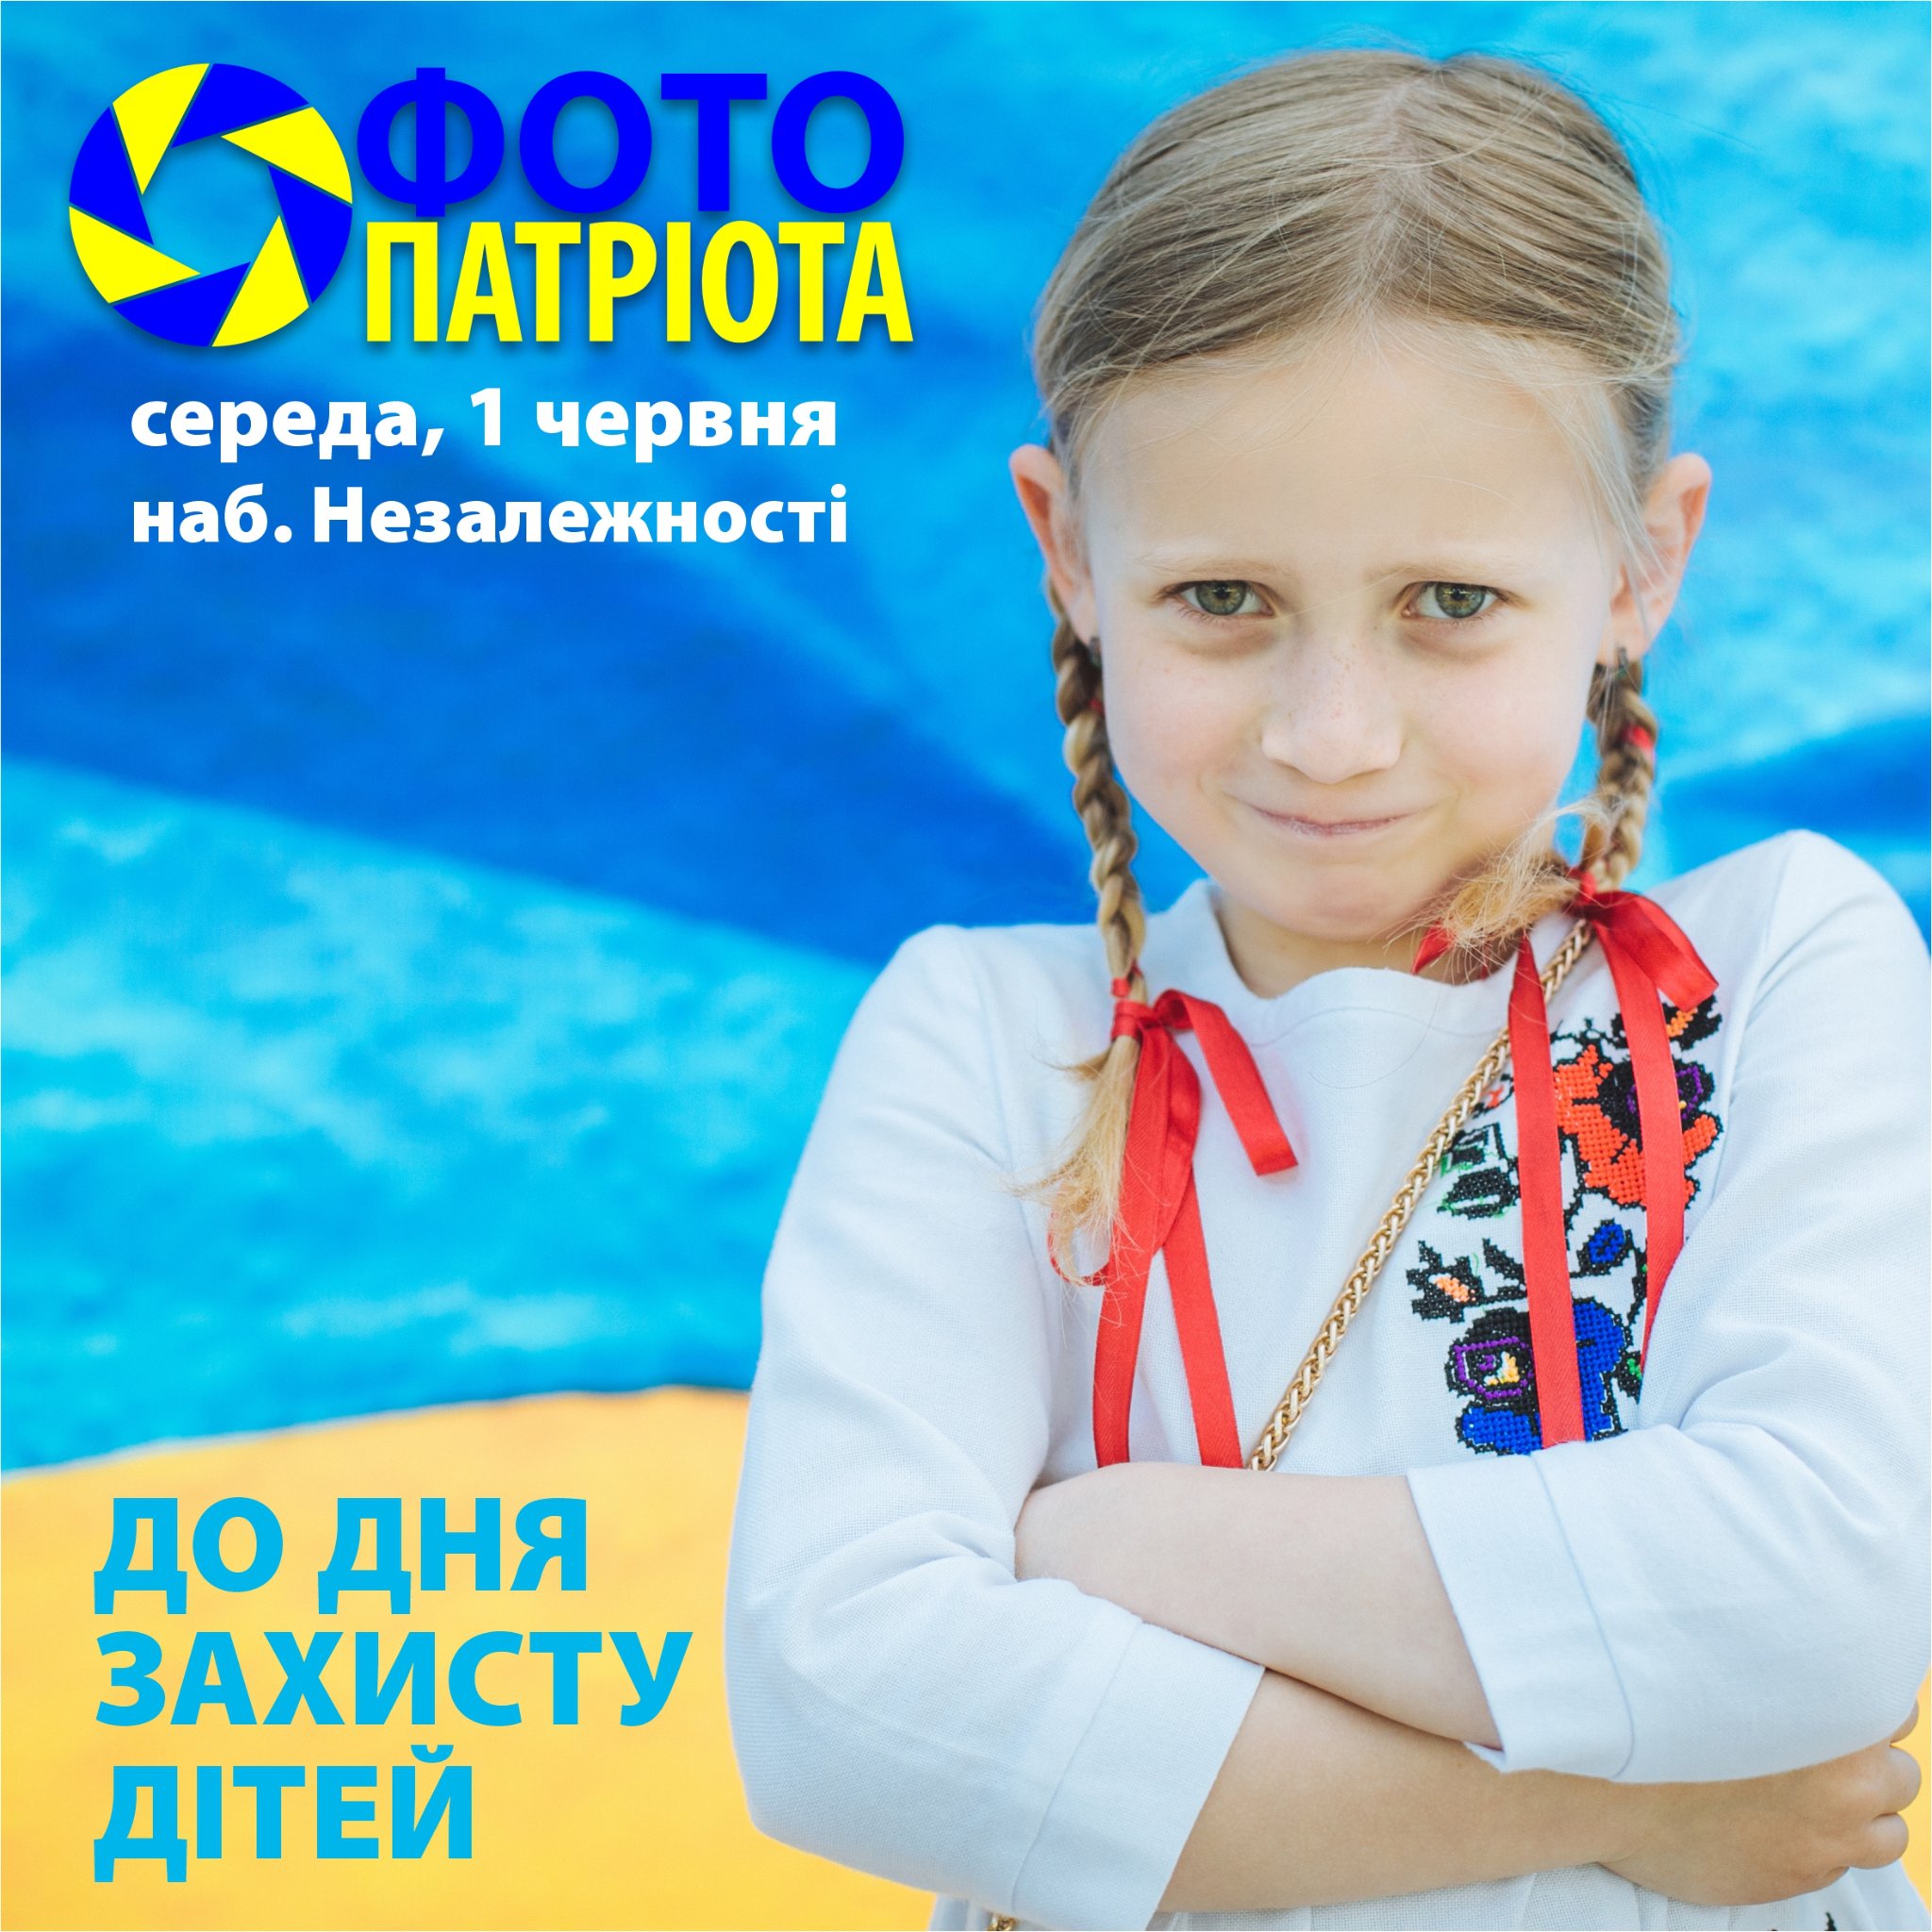 У День захисту дітей в Ужгороді знову зніматимуть "Фото патріота"